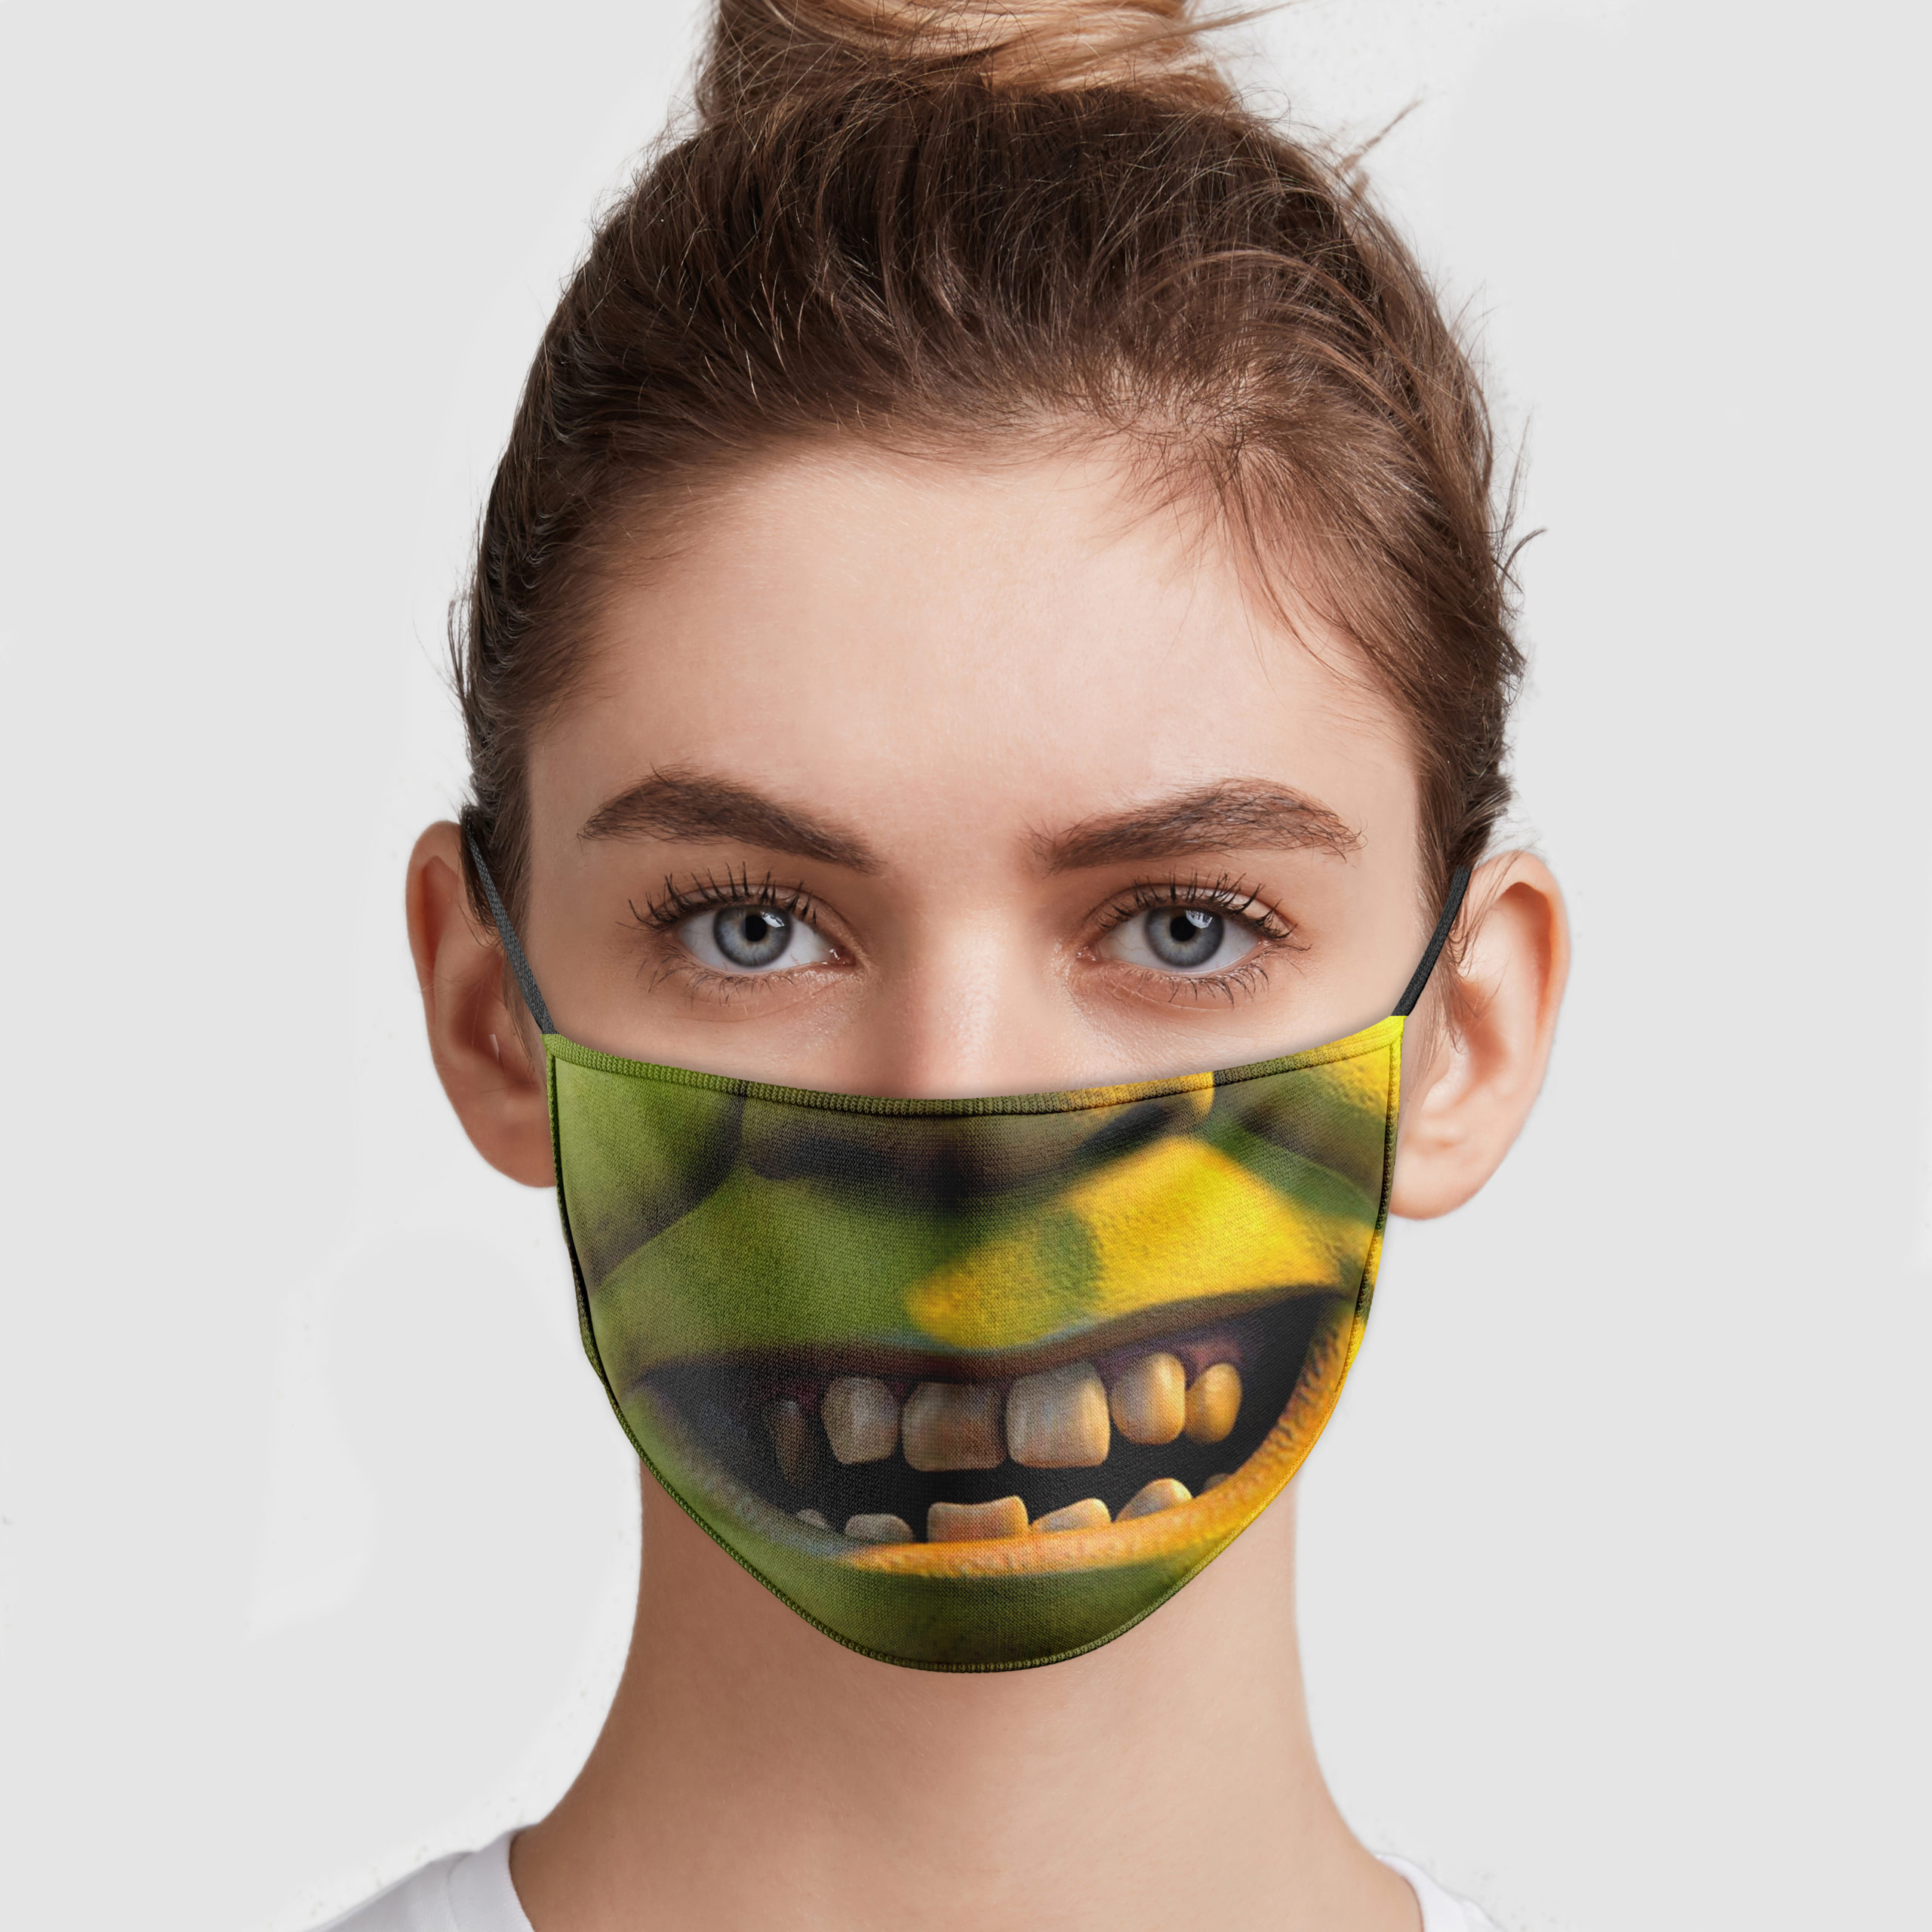 halv otte Eastern klodset Shrek Face Mask | Allbluetees.com